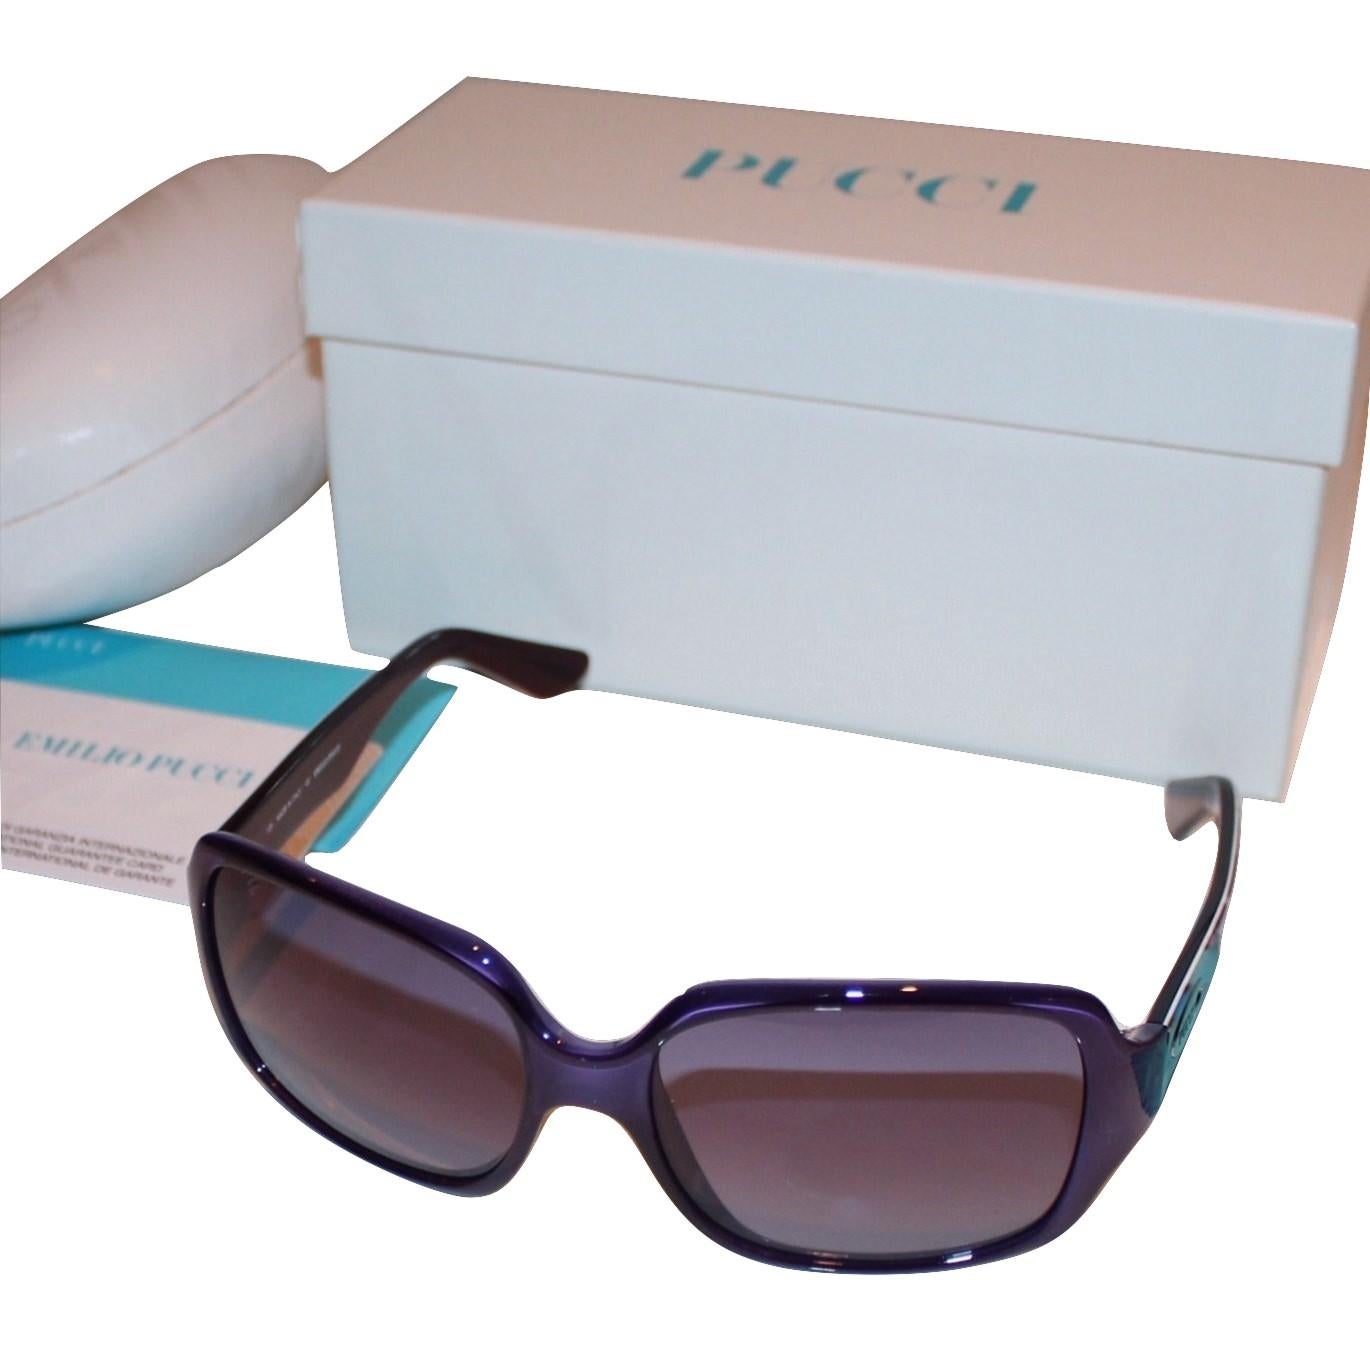 New Emilio Pucci Purple Logo Sunglasses With Case 8